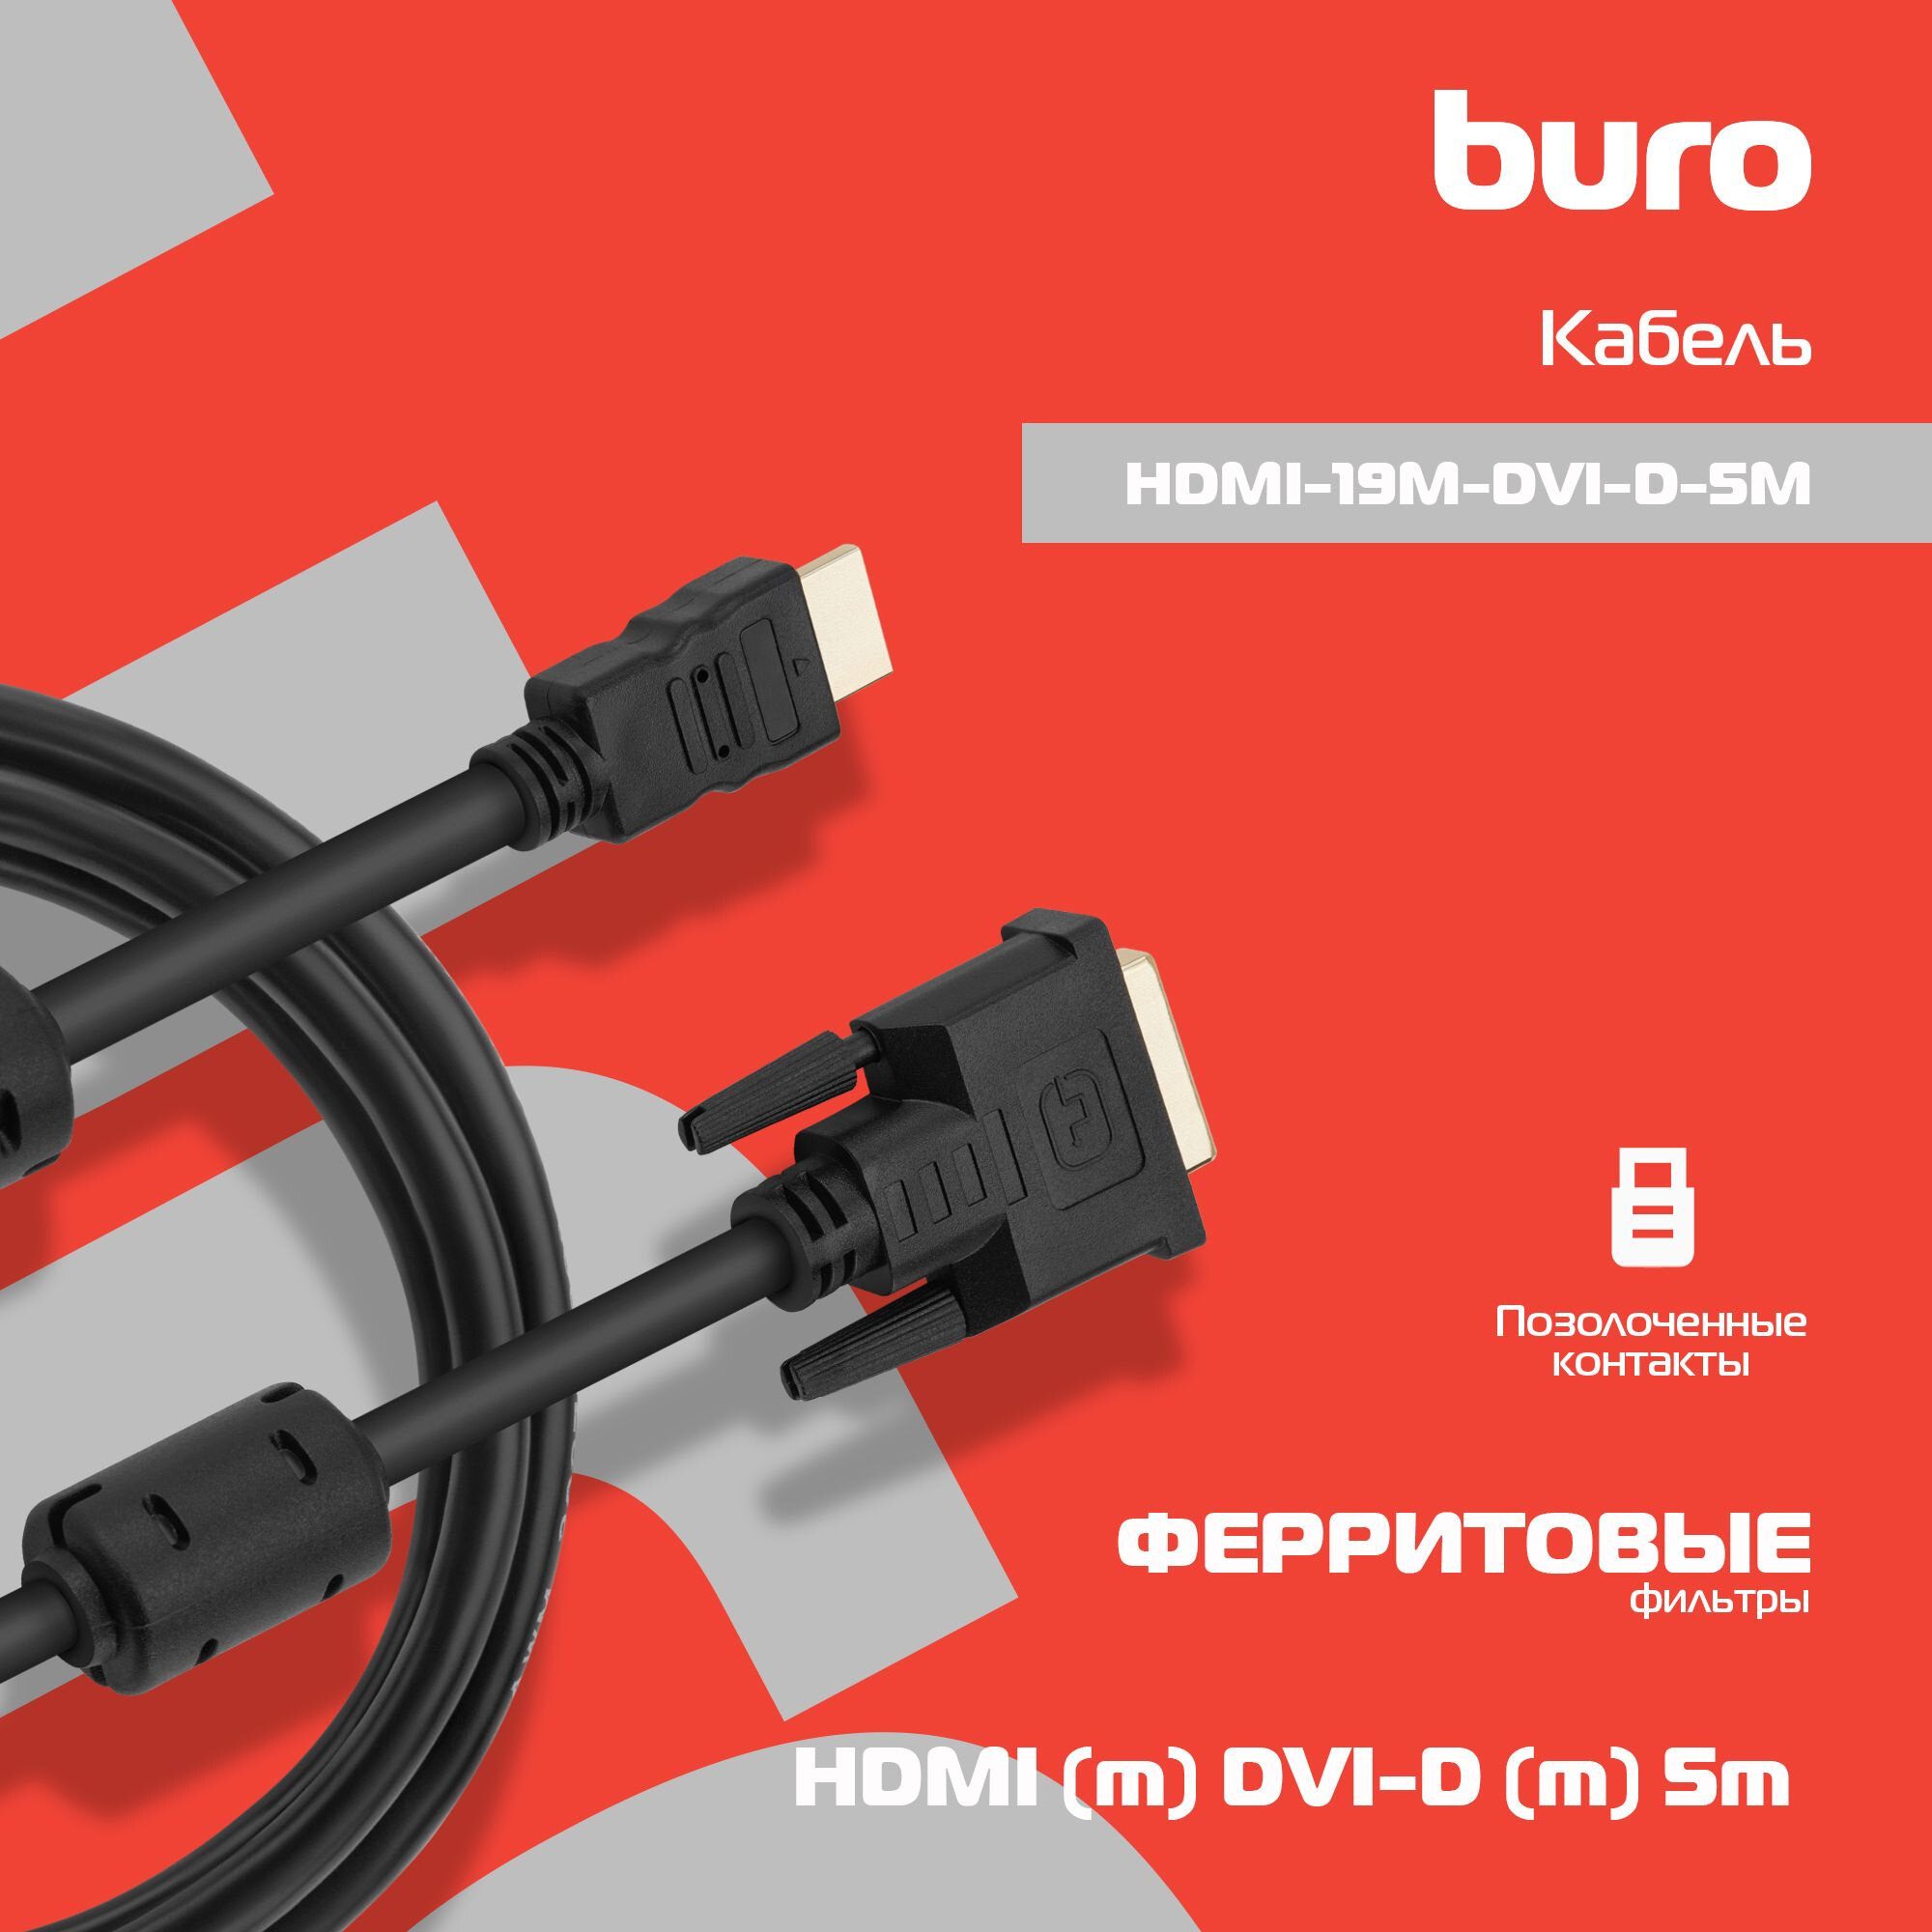 Кабель HDMI- DVI-D 5м Buro позолоченные контакты ферритовые кольца HDMI-19M-DVI-D-5M - фото №10